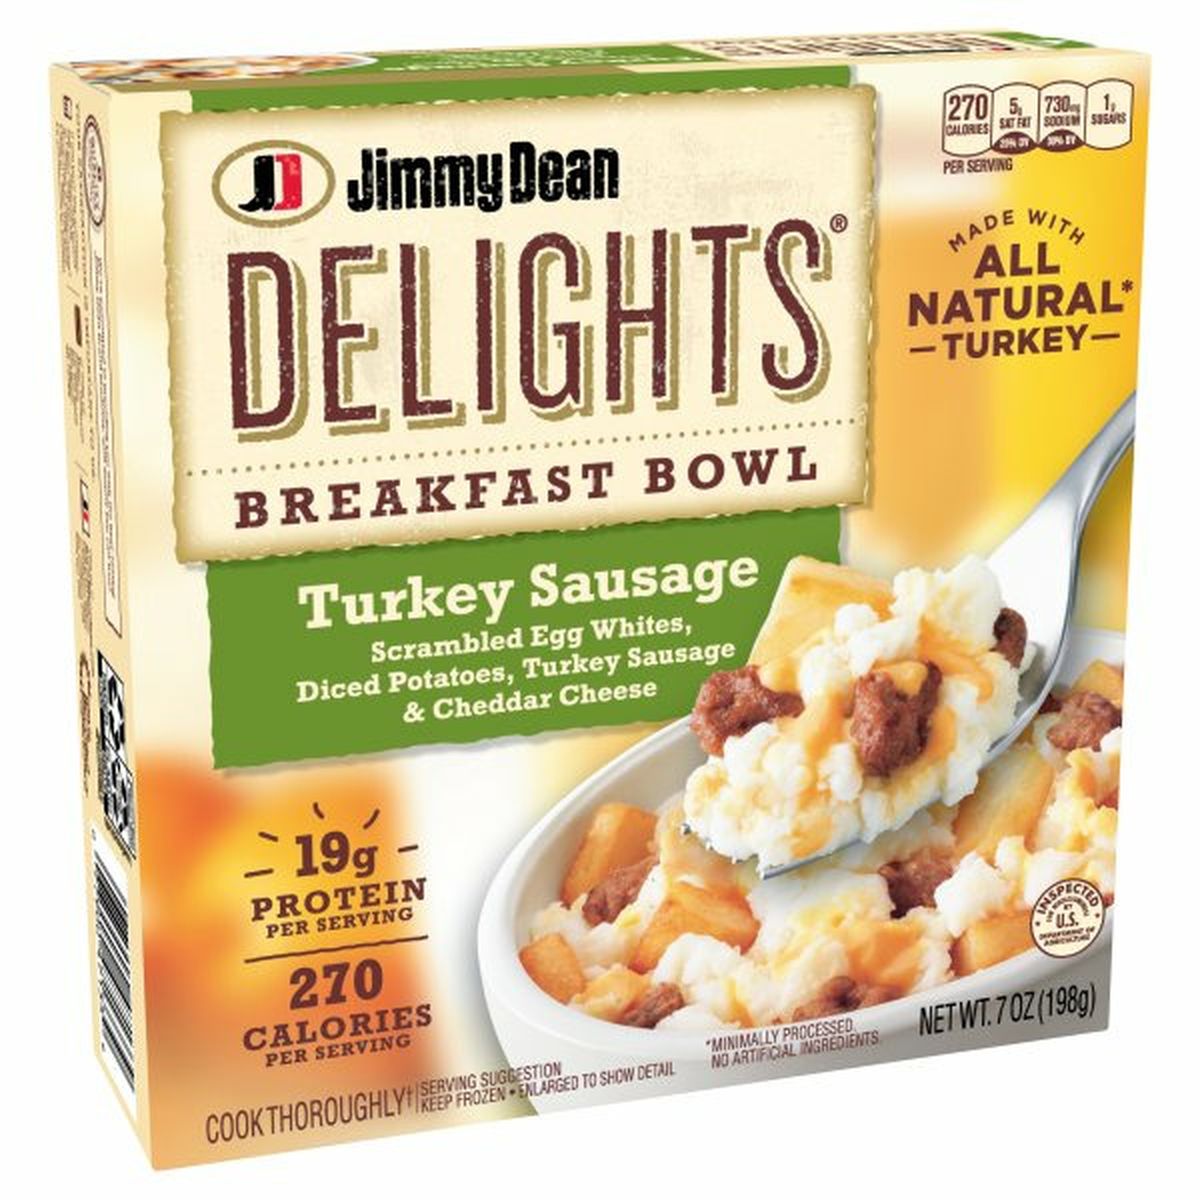 Calories in Jimmy Dean Delights Jimmy Dean Delights Turkey Sausage Breakfast Bowl